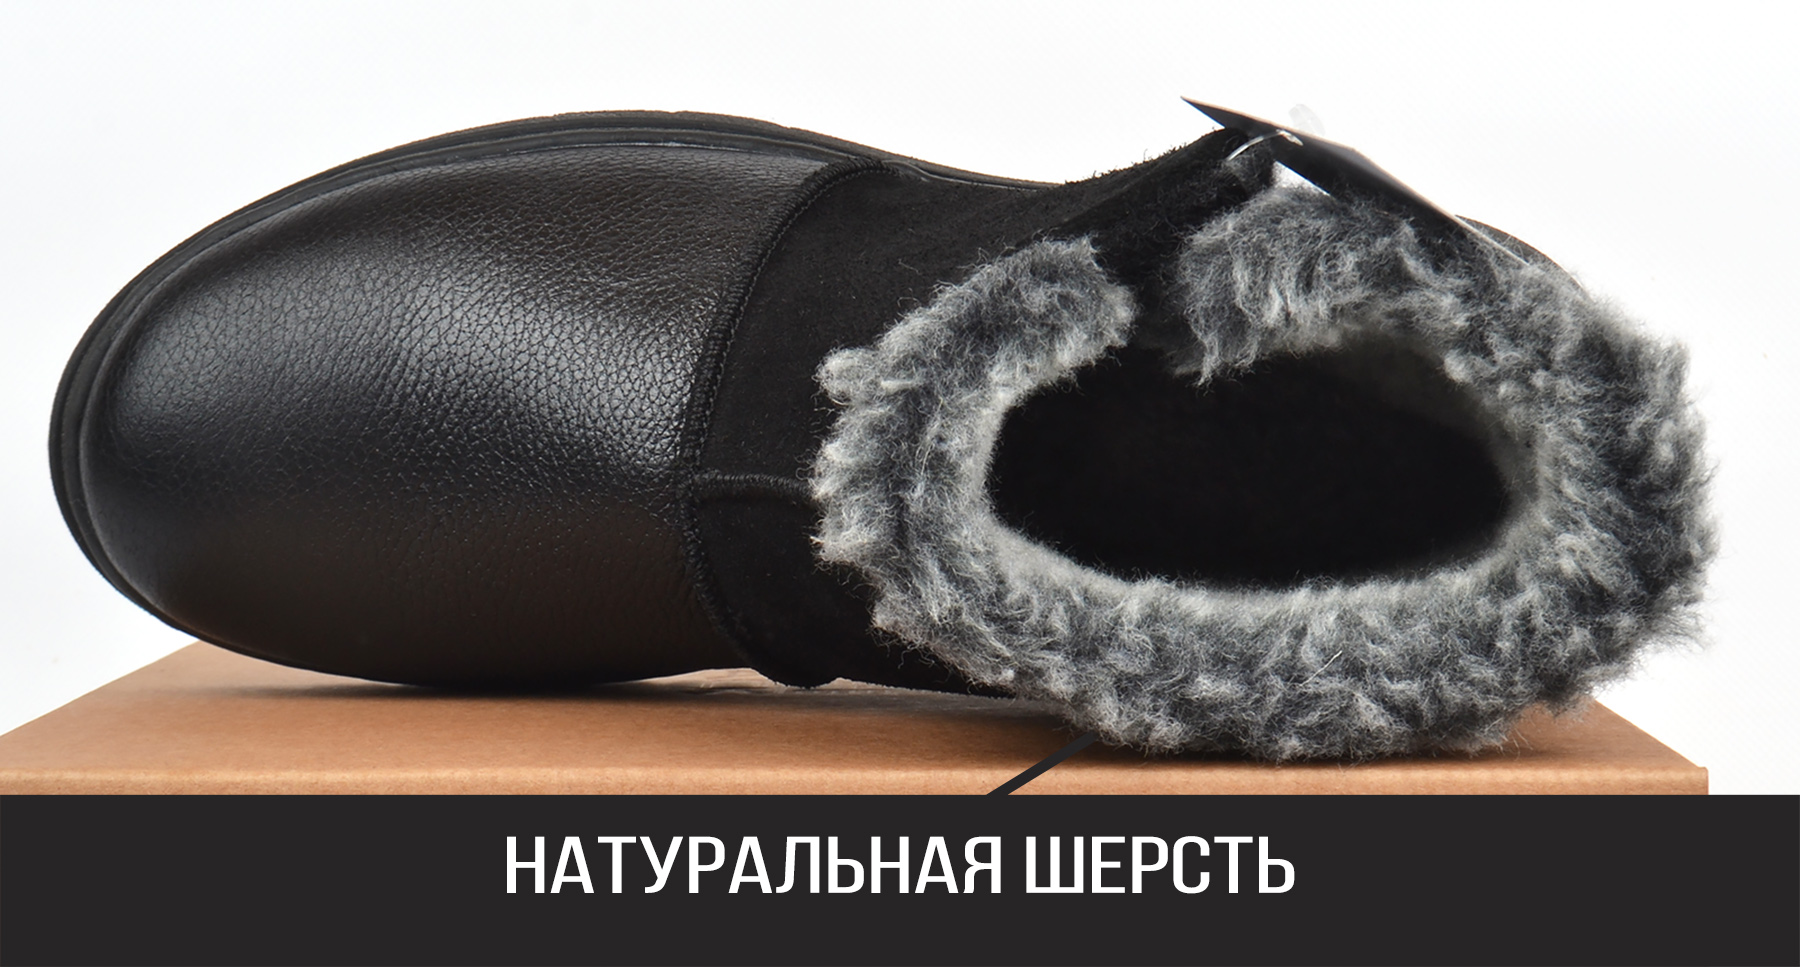 100% натуральная шерсть в мужских кожаных угги Richi Black купить в Украине